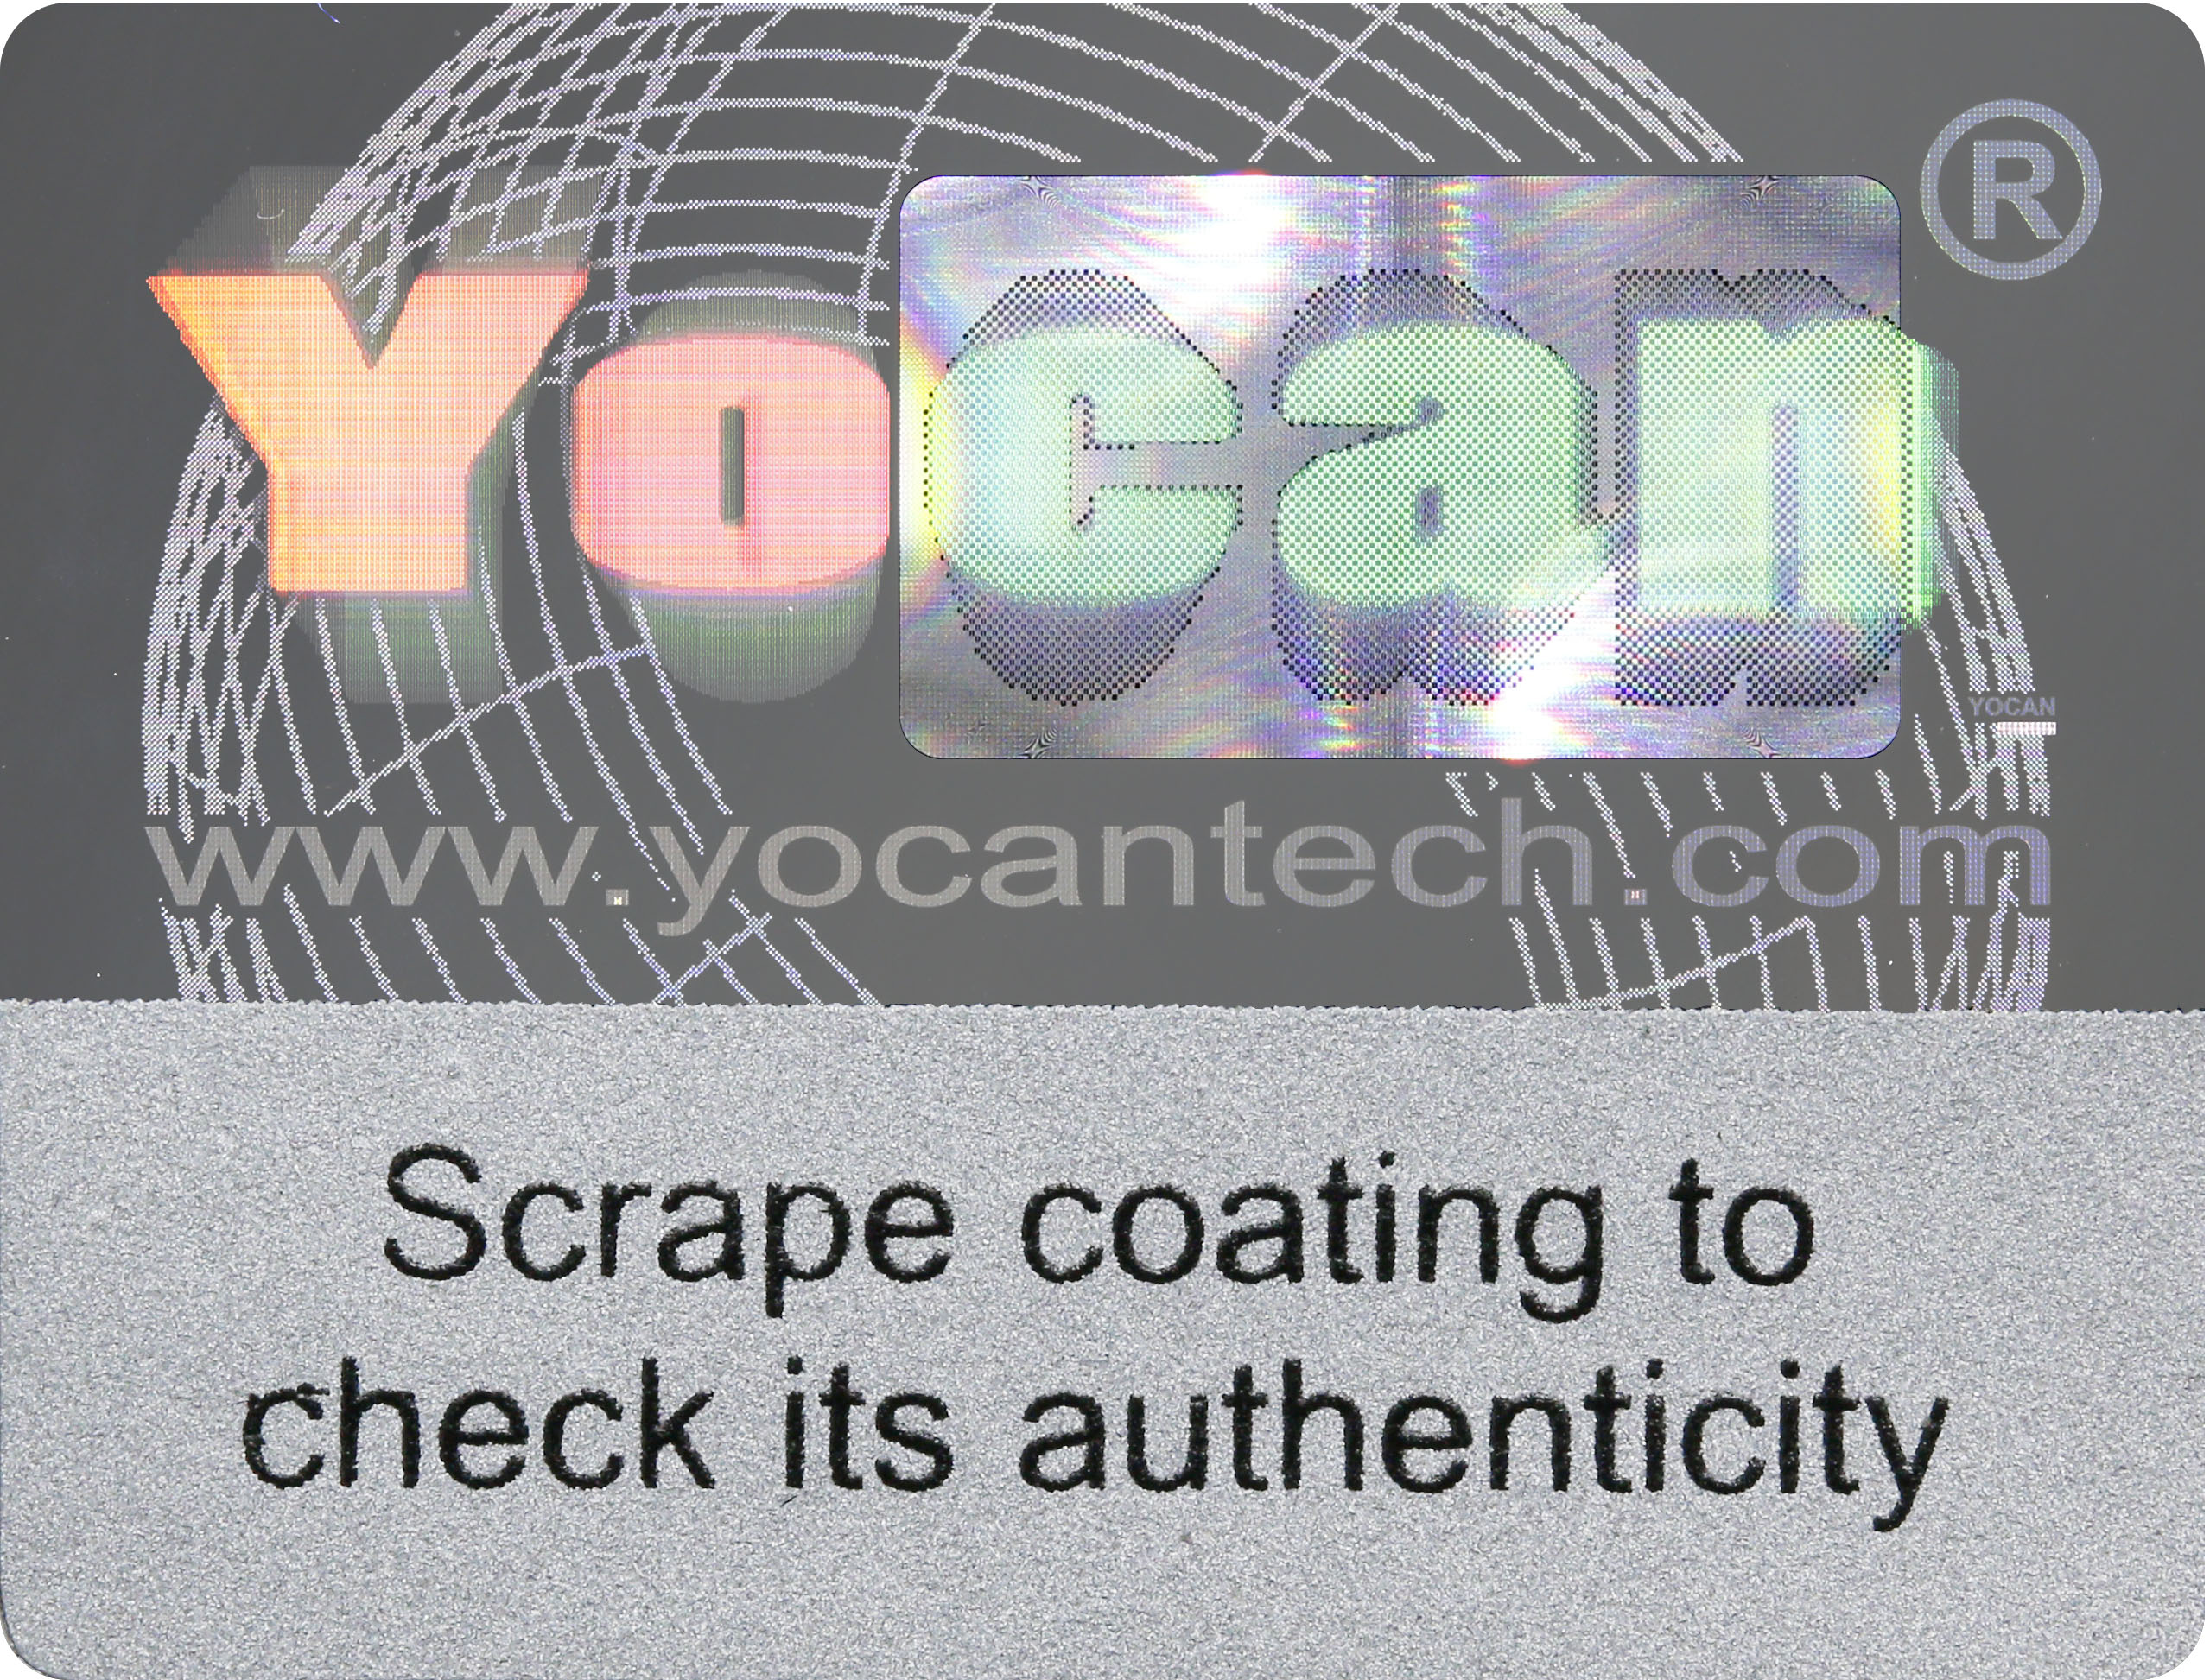 www.yocantech.com